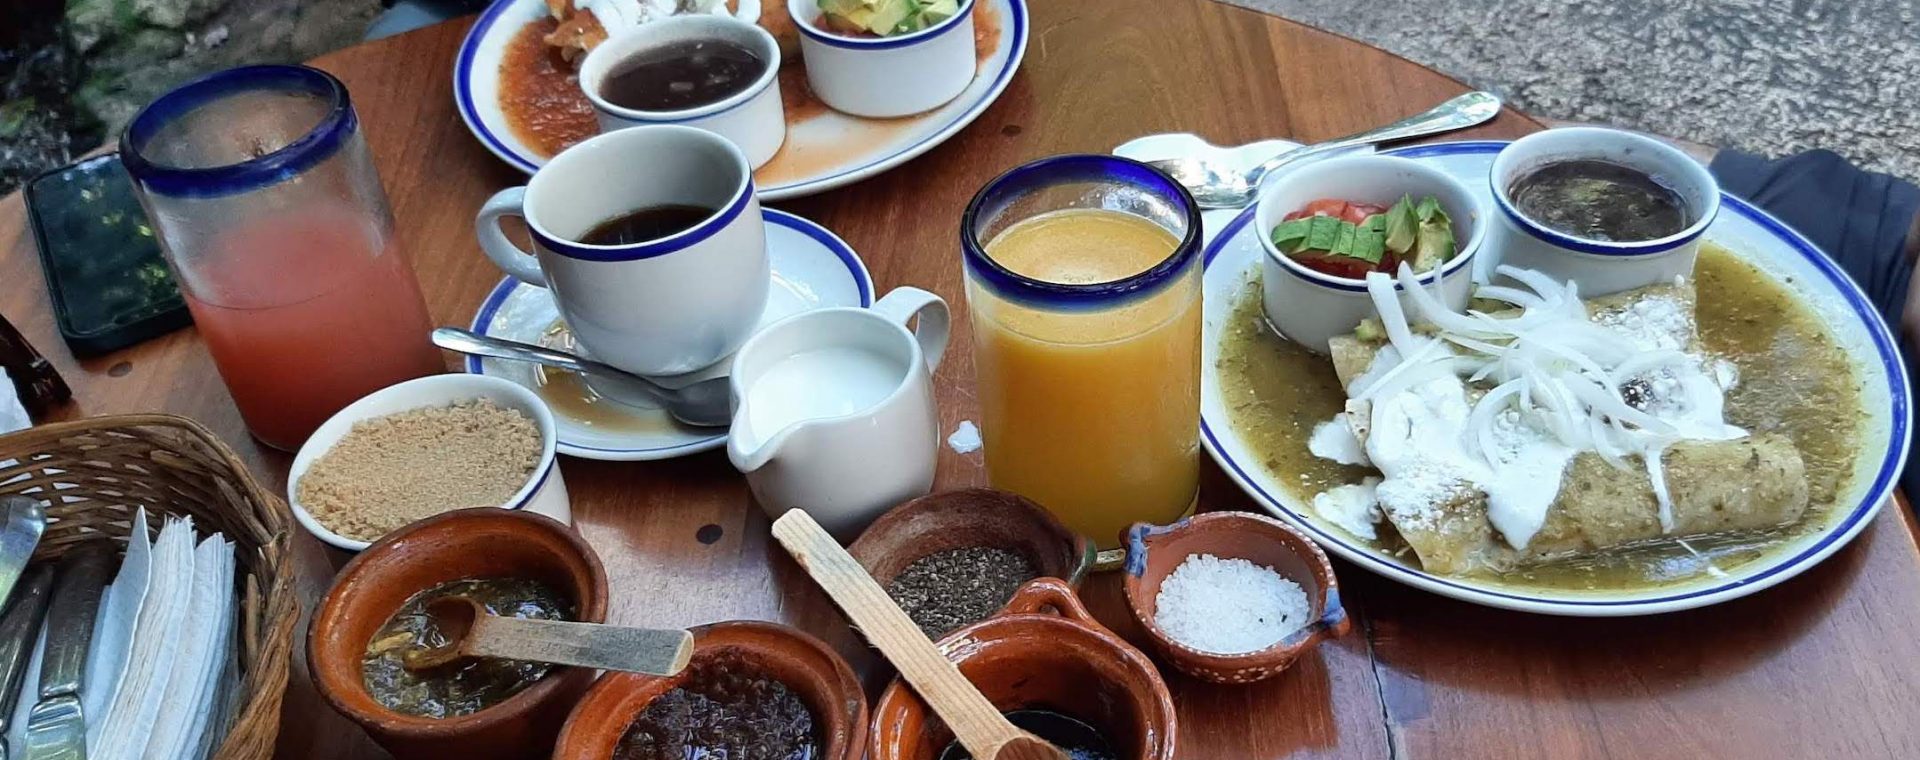 Restaurantes mexicanos en Playa del Carmen - Memorias de un viaje